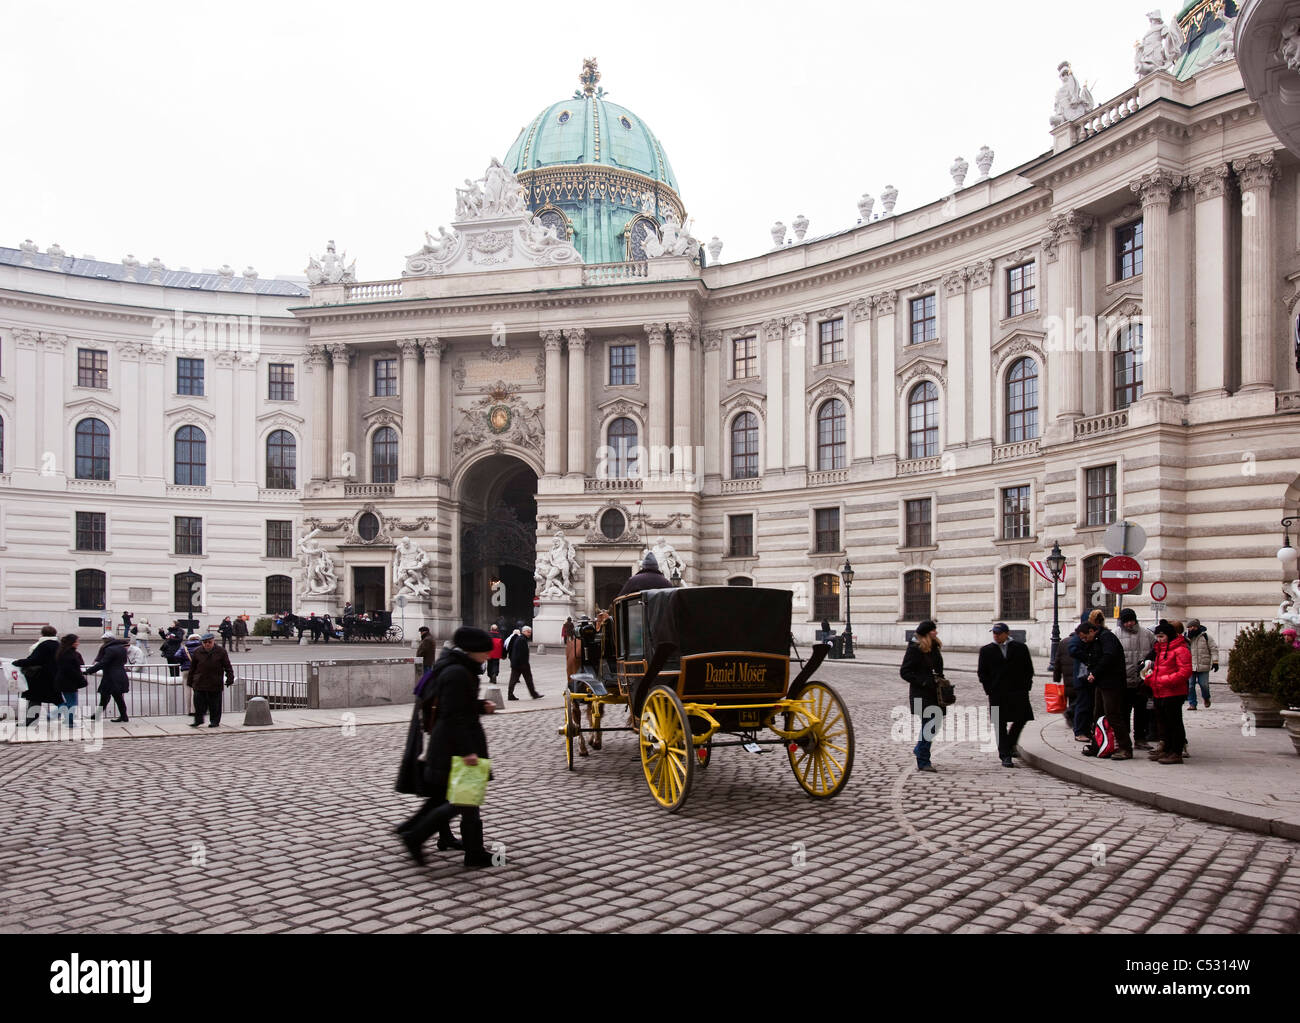 Ein Pferd angetrieben Wagen kreuzt vor der Hofburg Michaeler Platz. Wien, Österreich. Stockfoto